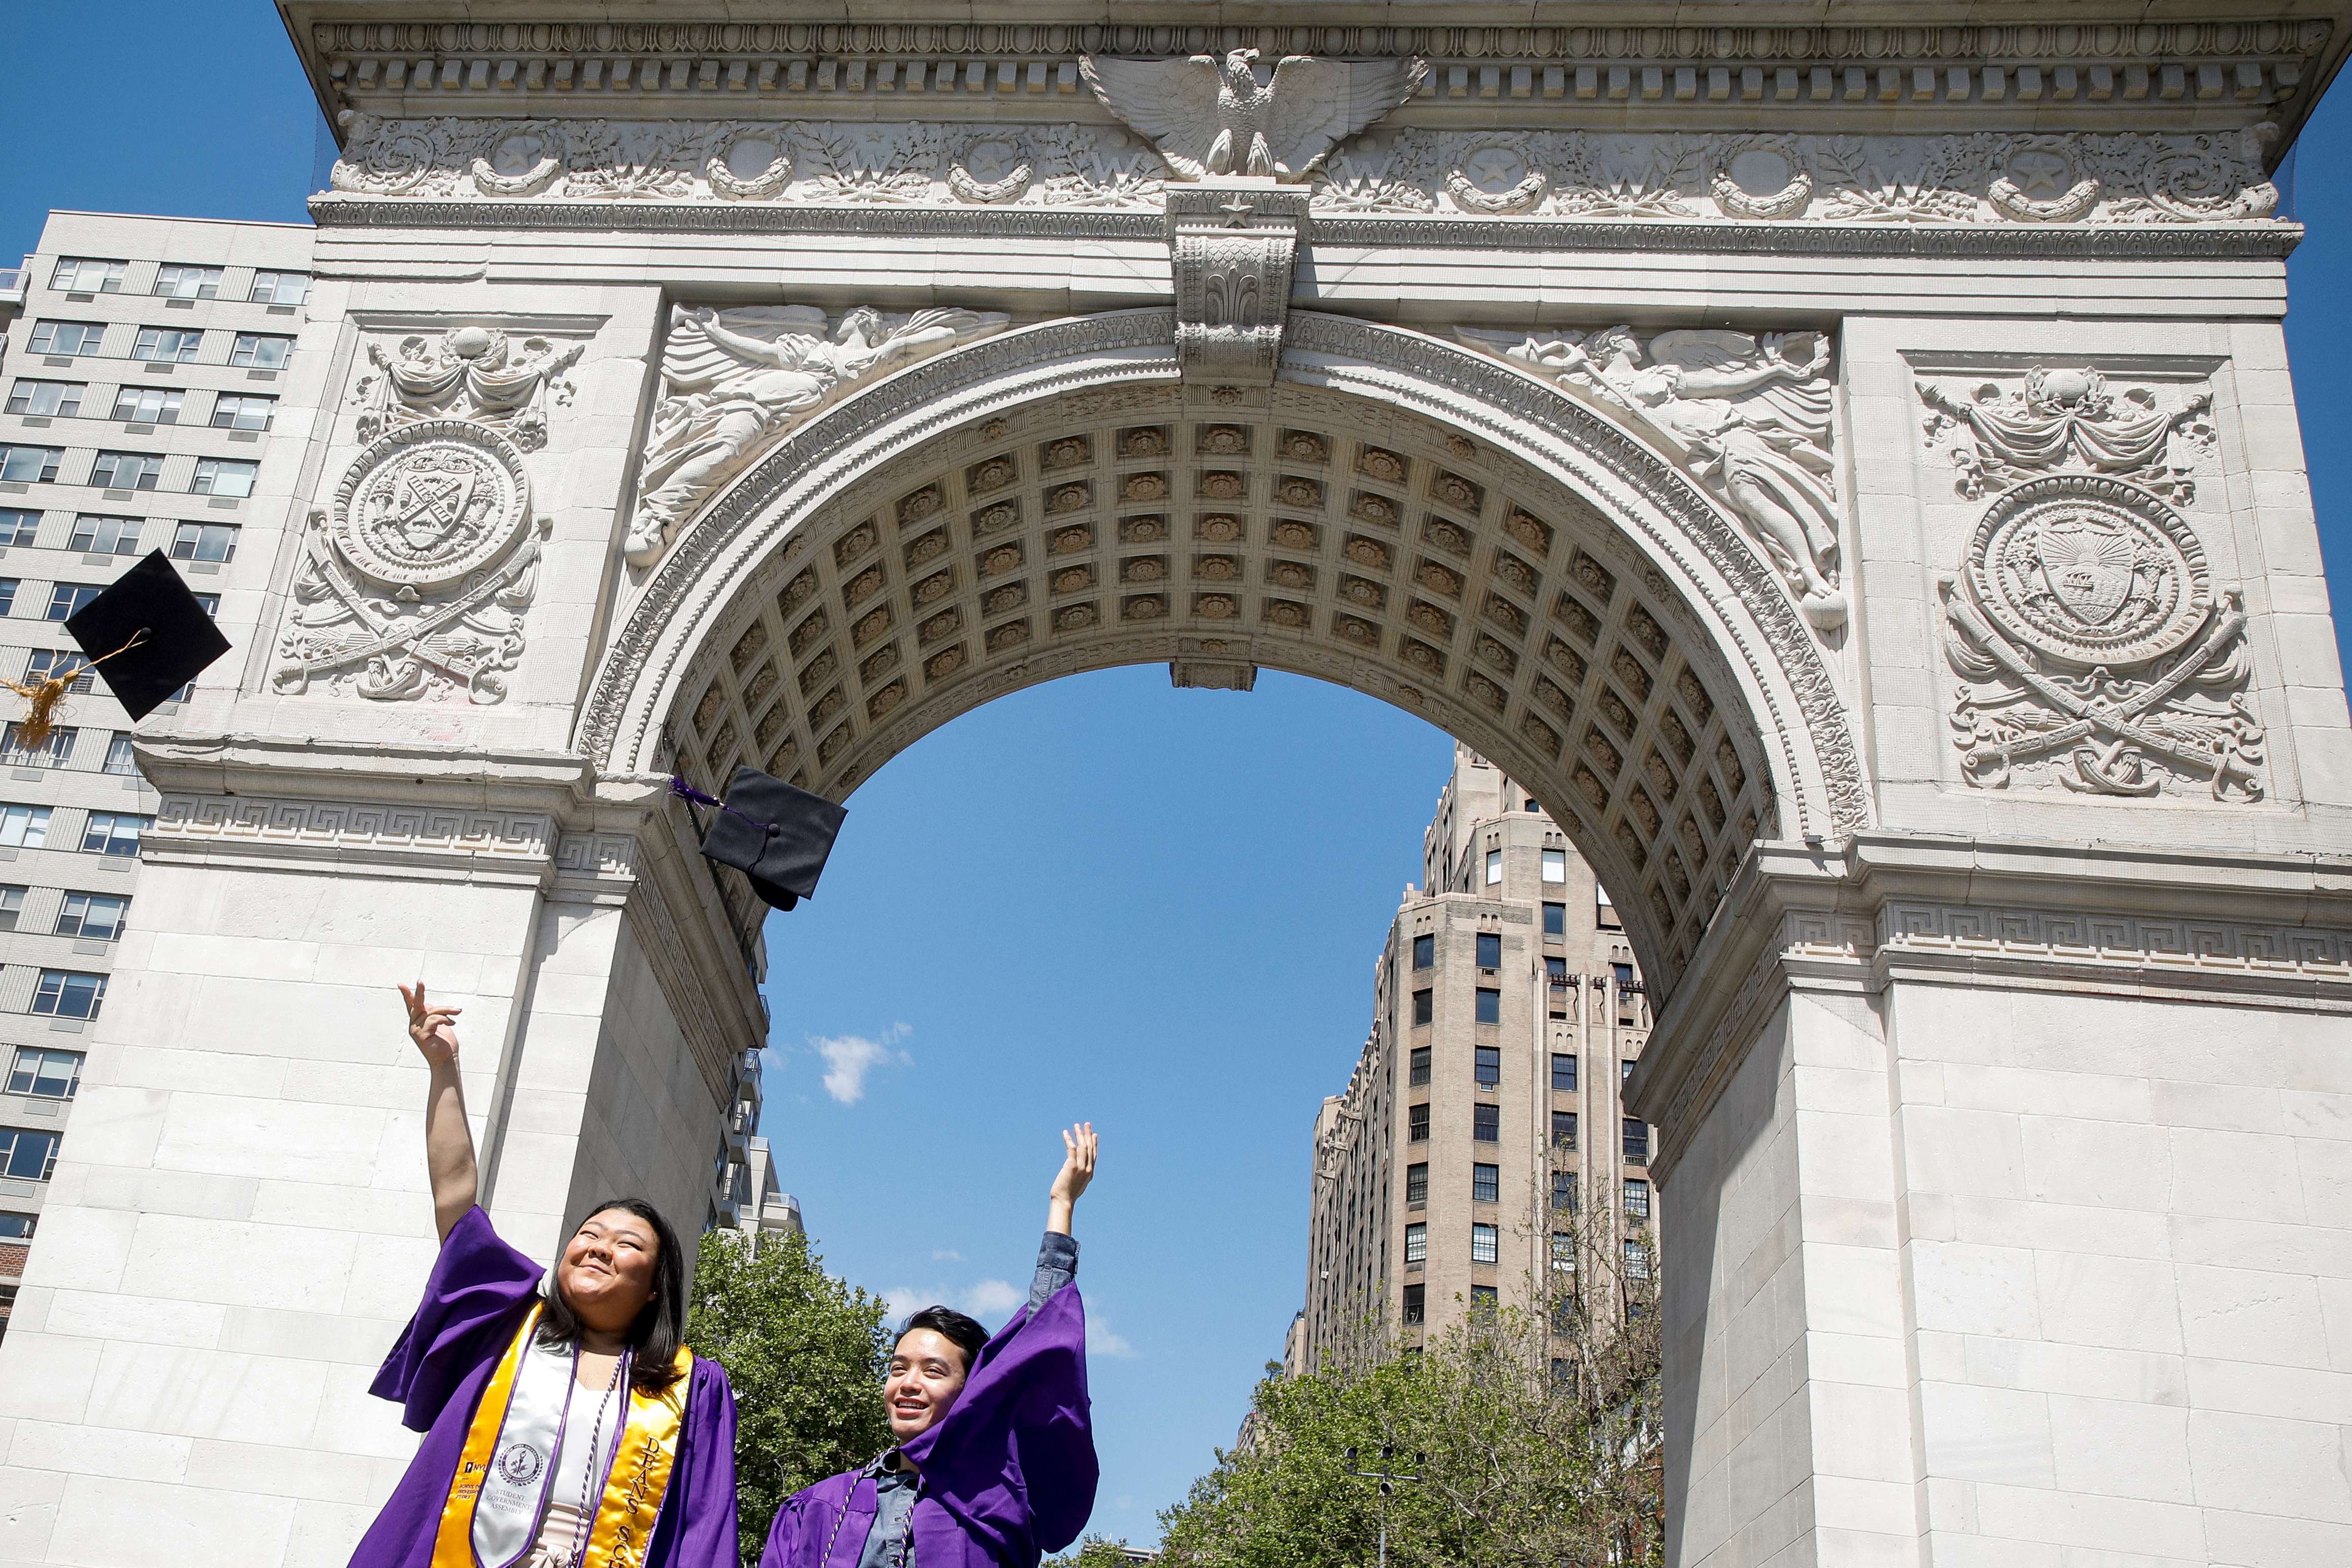 New York University graduates Rachel Kim and Melvin Nguyen pose together under the Washington Square Arch in Washington Square Park in New York